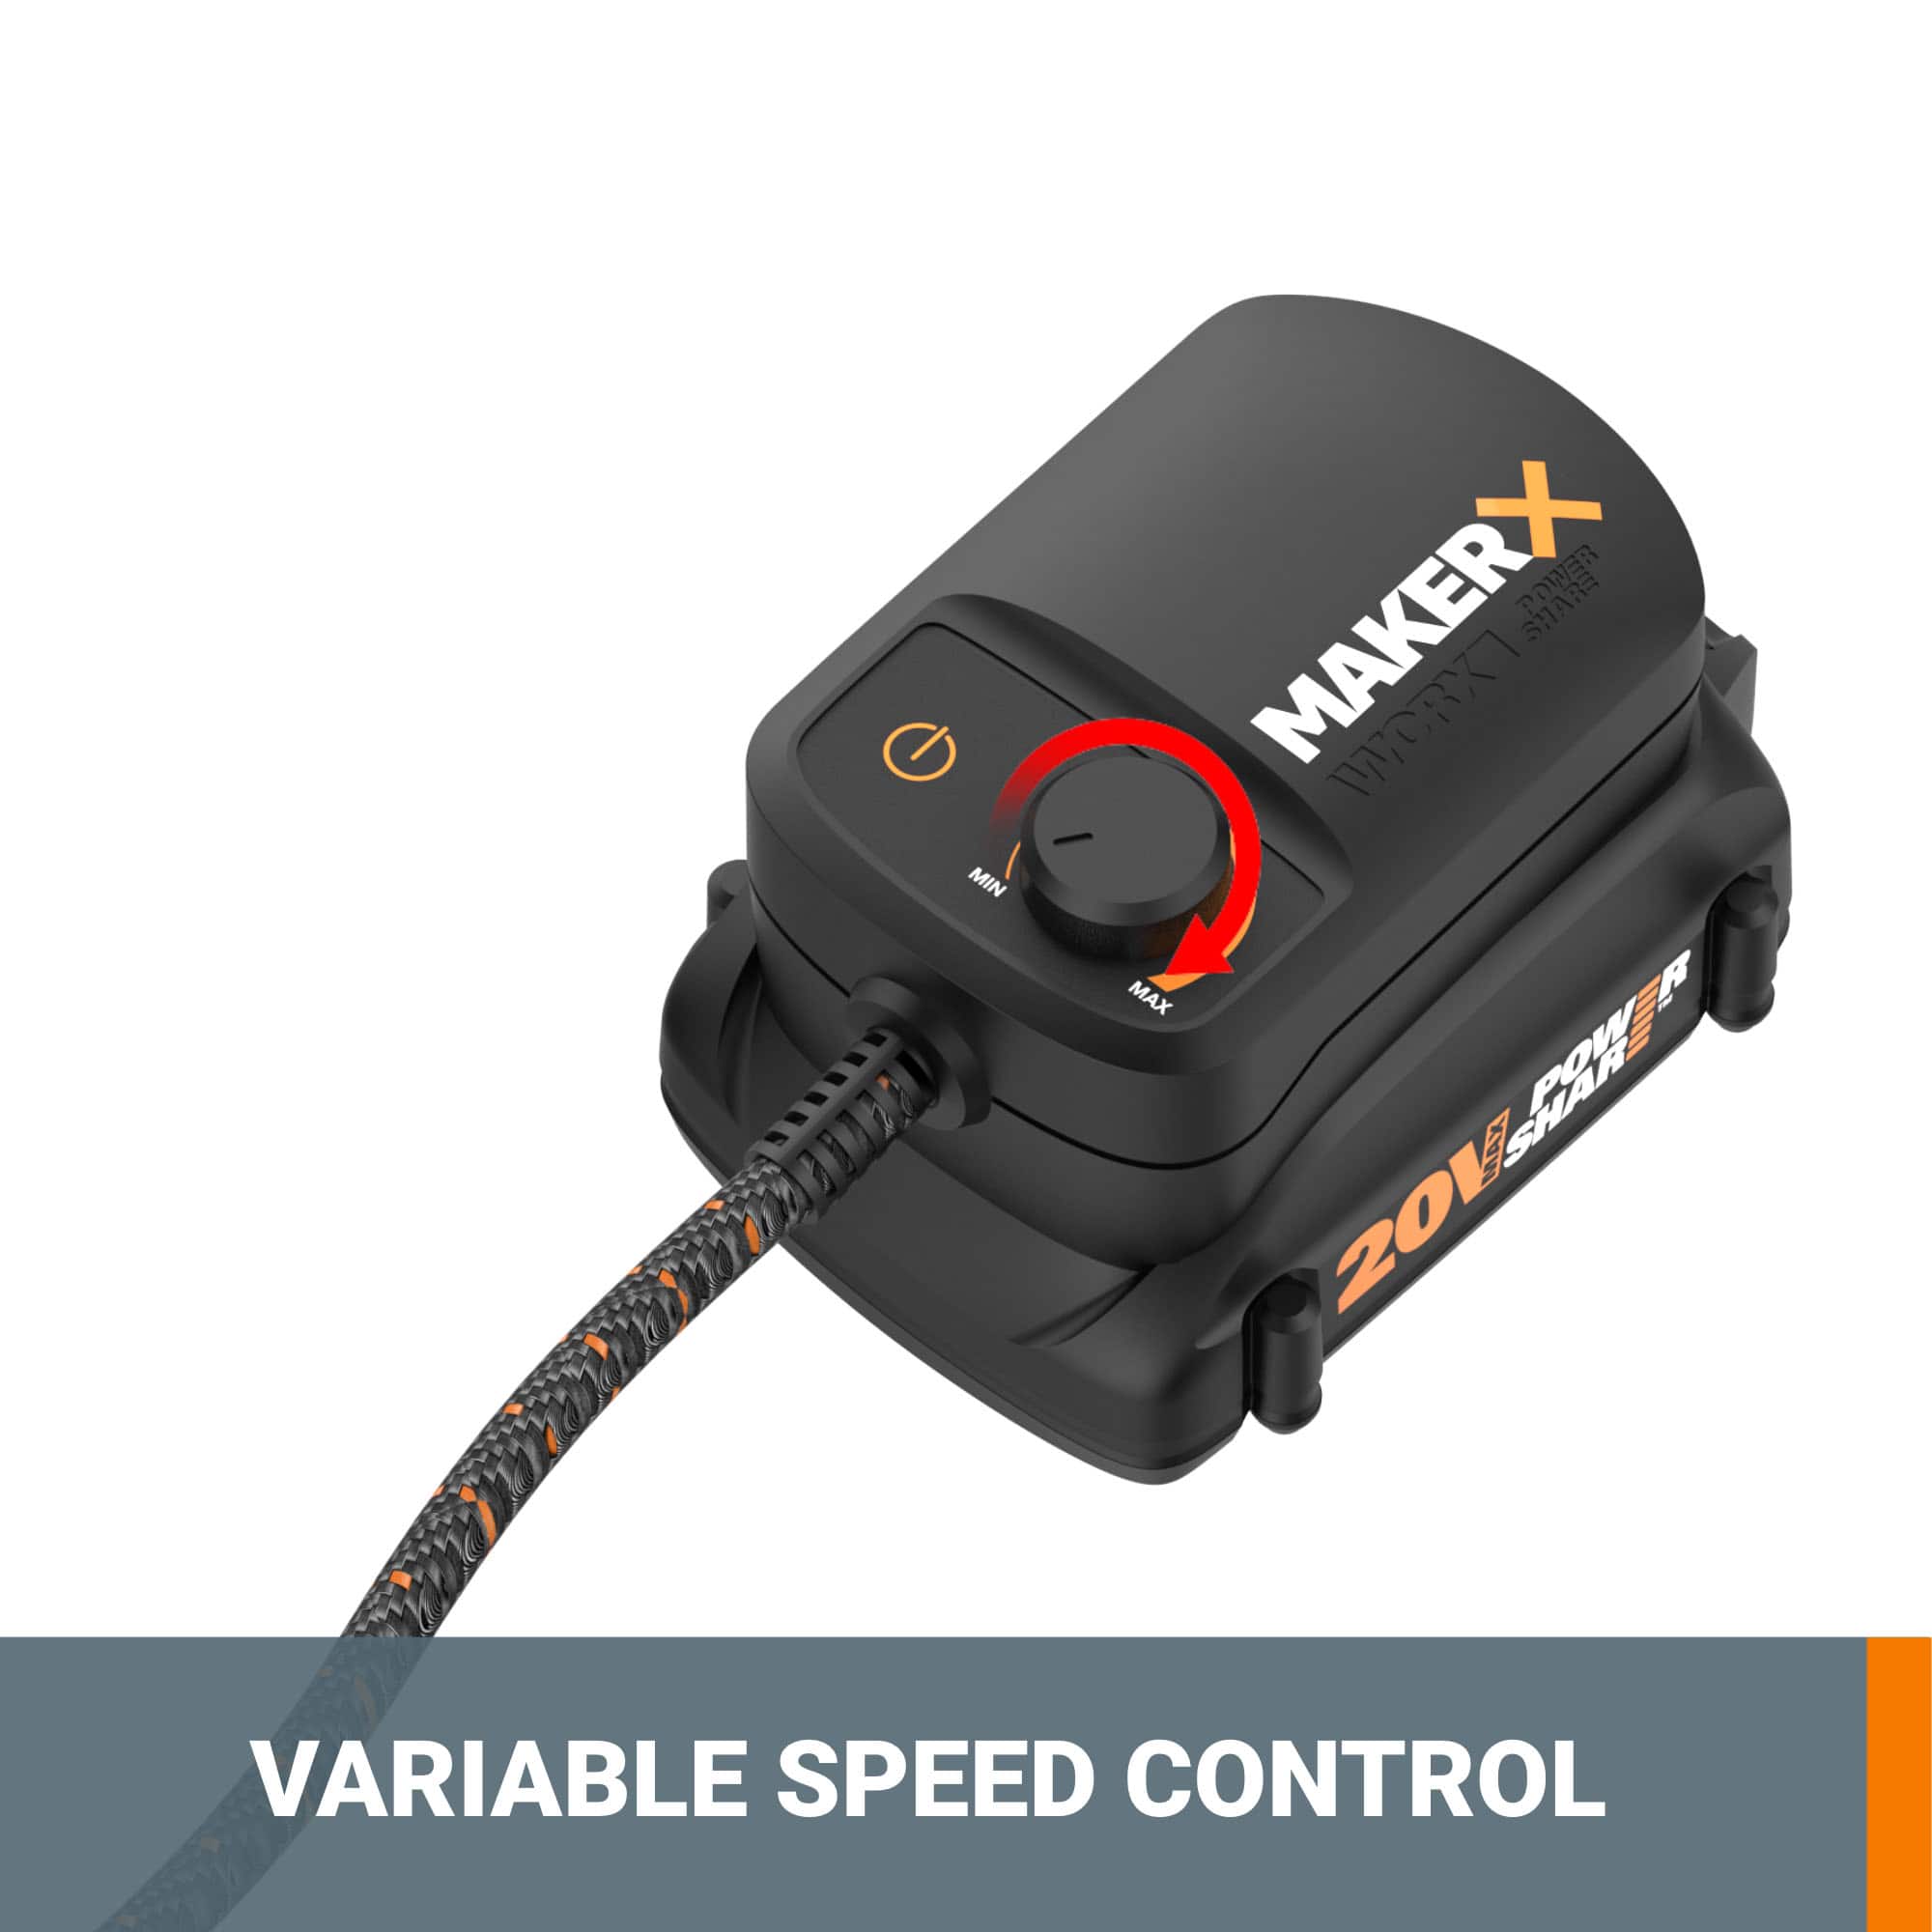 Worx Power Share MakerX Kit Rotary Tool, Mini Heat Gun